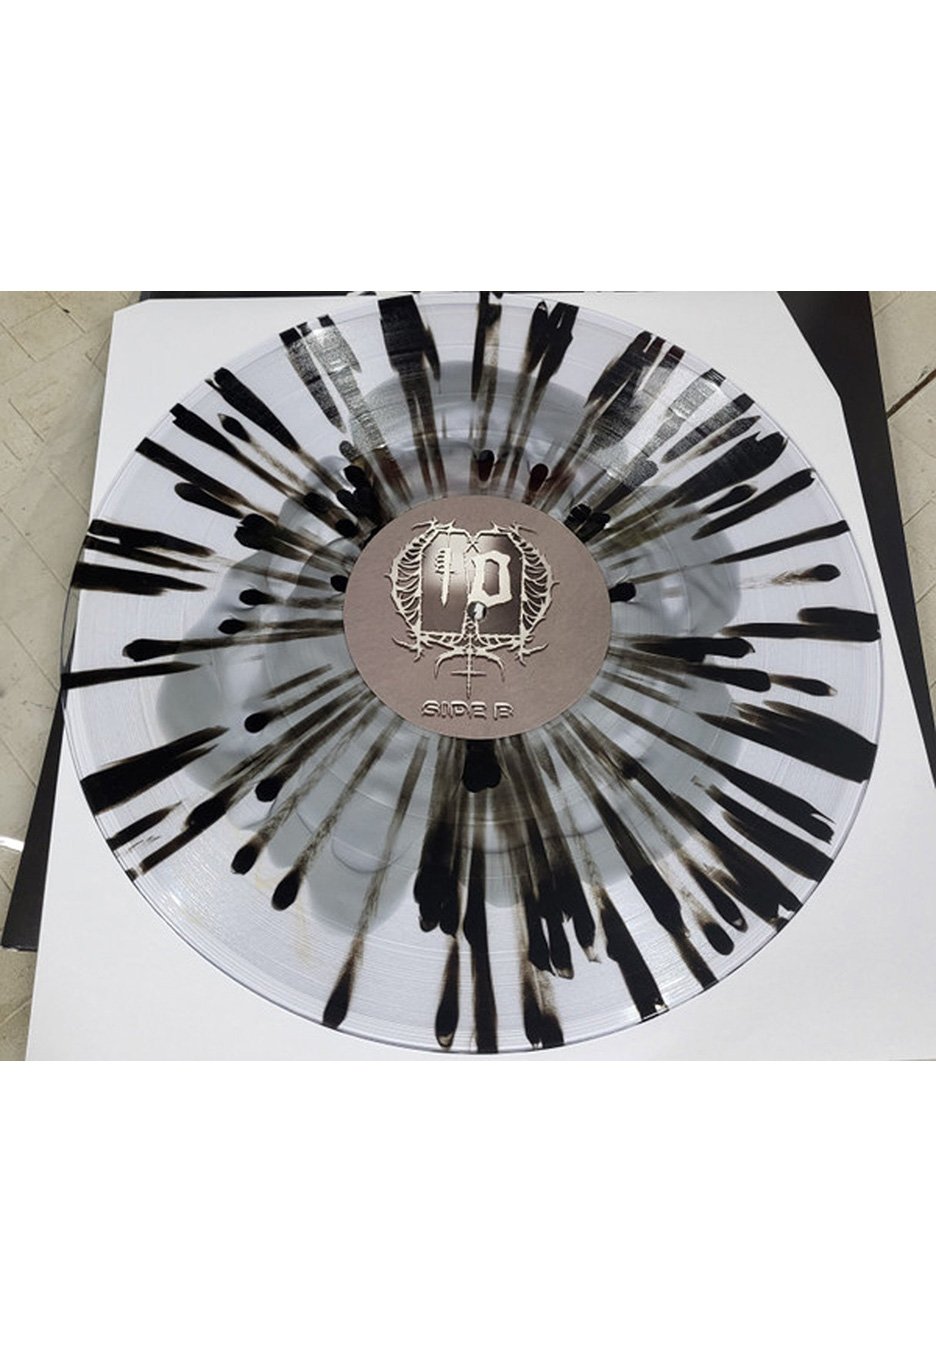 Last Ten Seconds Of Life - The Last Ten Seconds Of Life Silver Haze / Black - Splattered 2 Vinyl